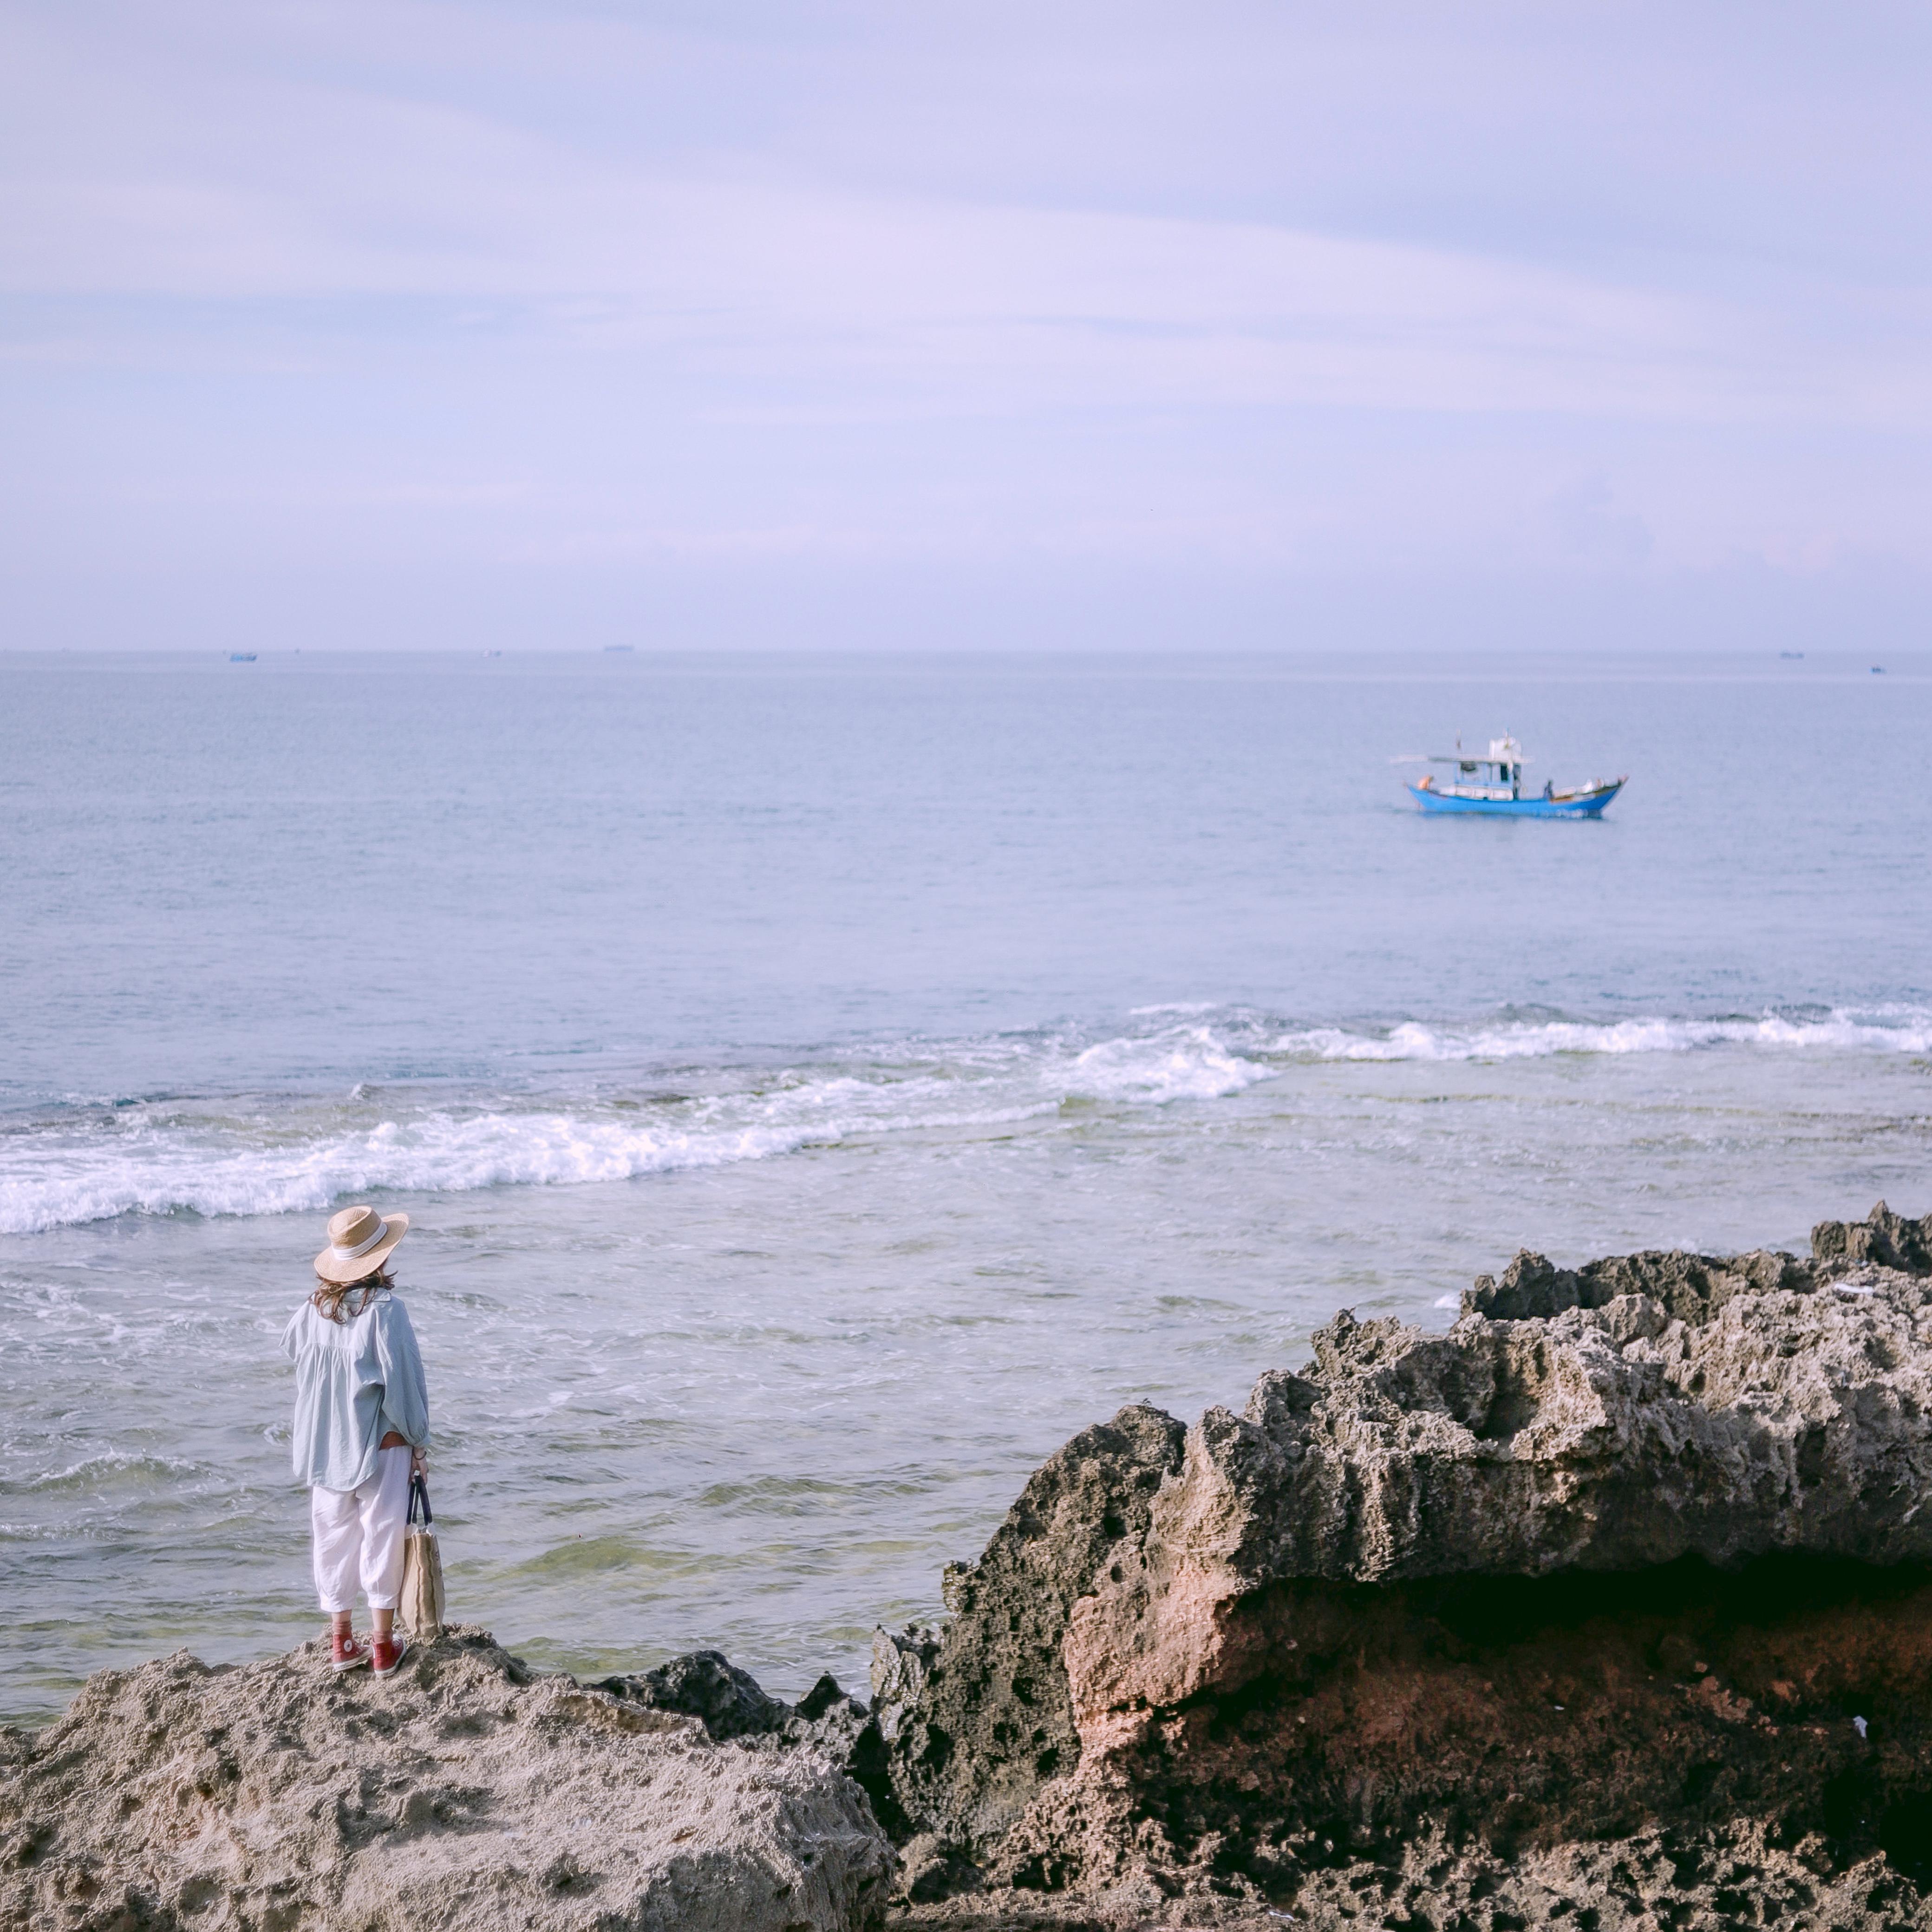 Đến 'Địa Trung Hải' của Việt Nam, ngắm biển xanh cát trắng và làng chài đẹp mê hồn - 2